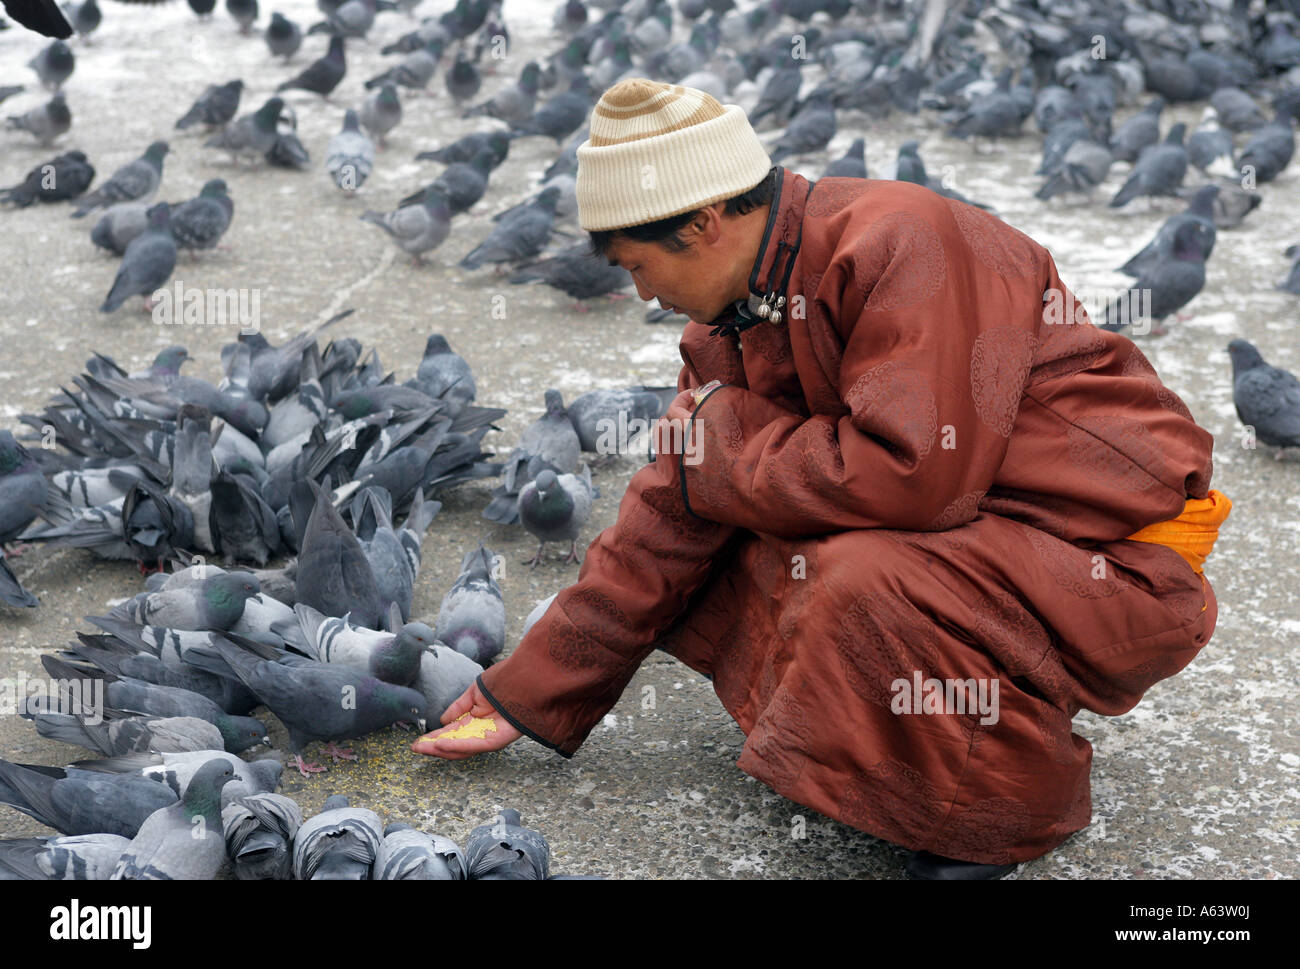 La Mongolie, le moine bouddhiste se nourrit les pigeons dans le monastère bouddhiste Gandantegchenling Ulaan Bataar Banque D'Images